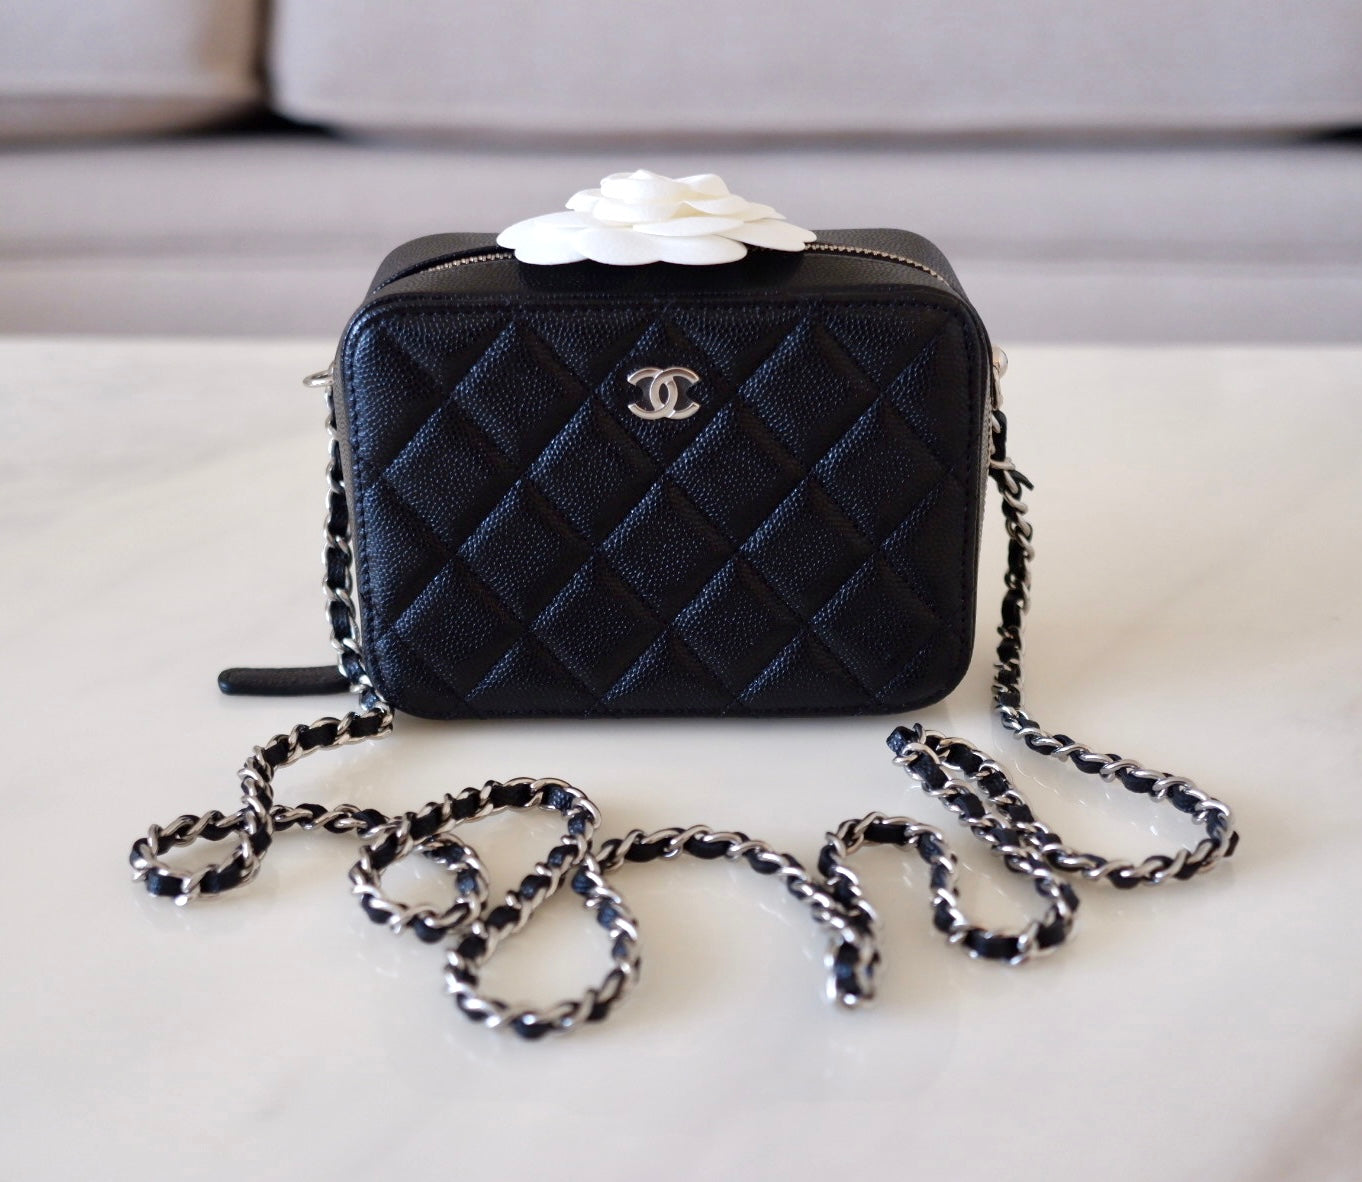 Chanel Black Caviar Leather Mini O Case Zip Pouch